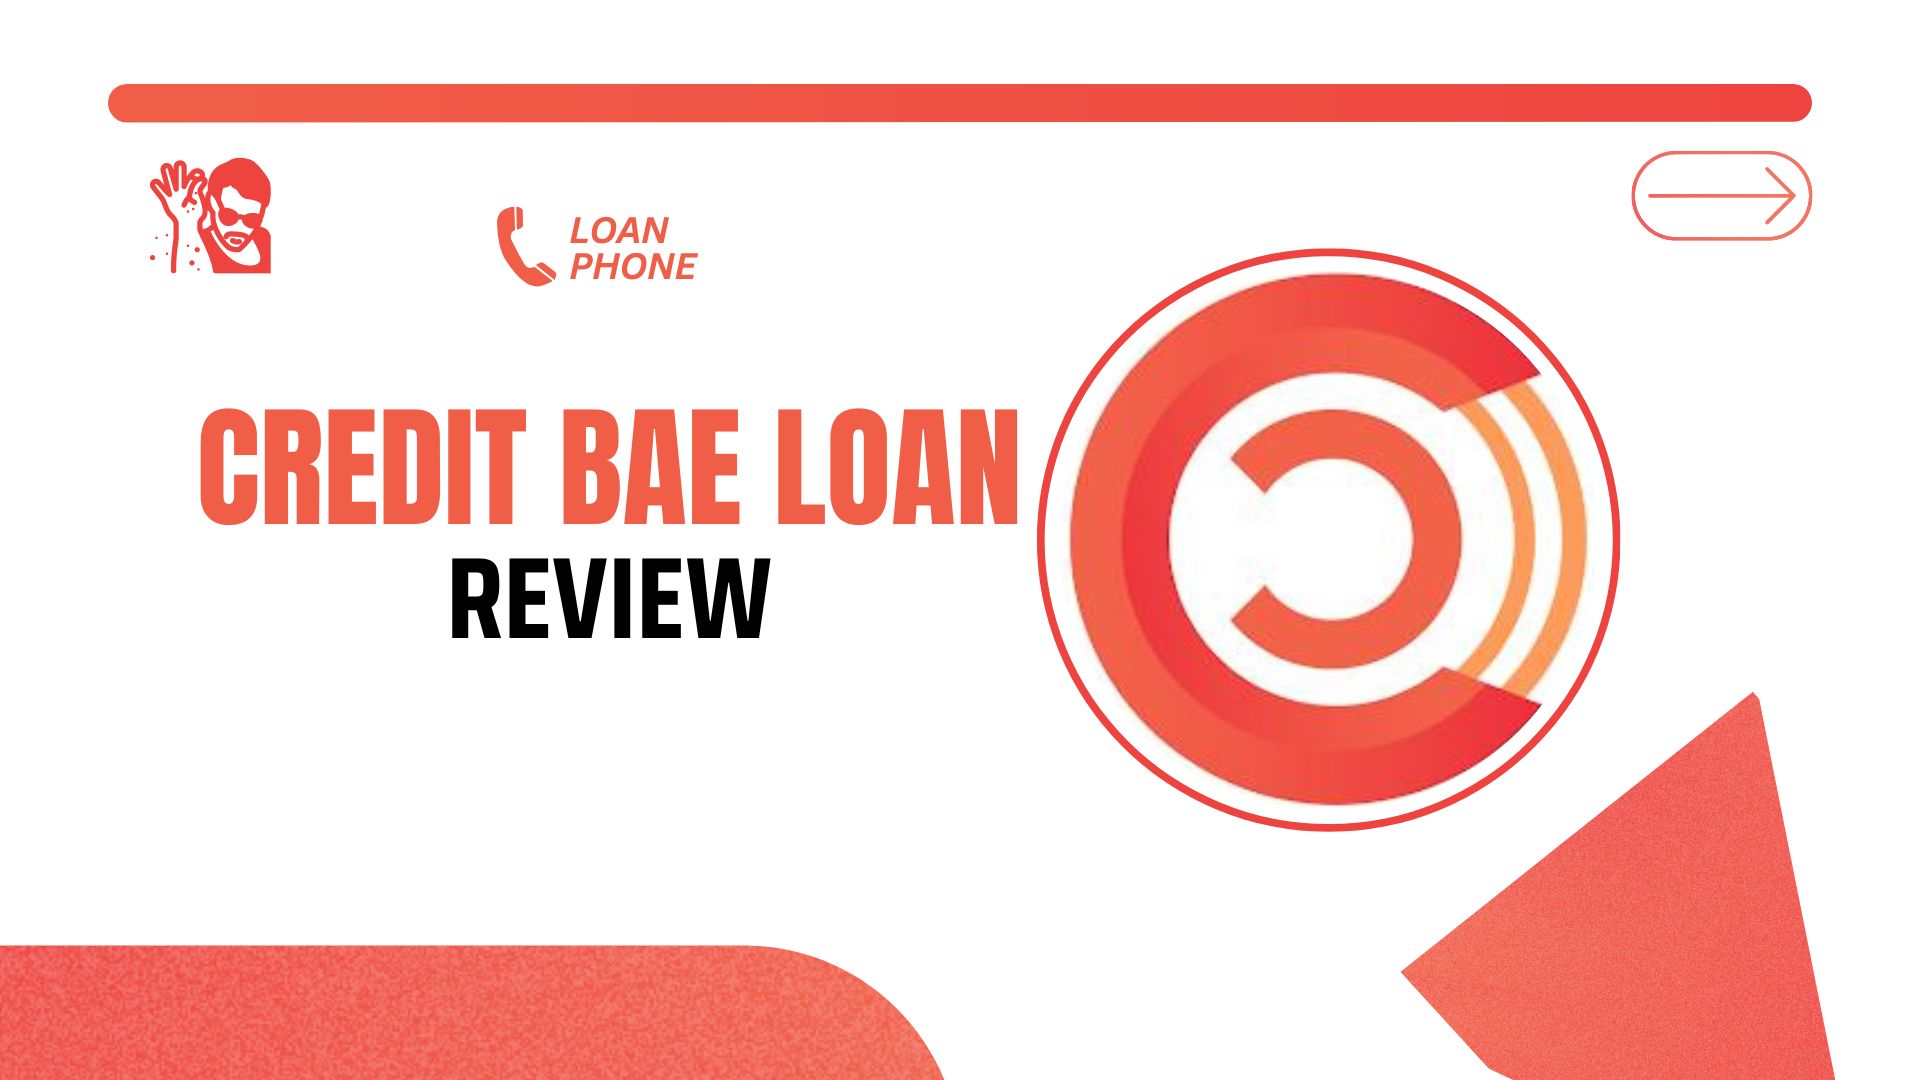 Credit Bae Loan App Review